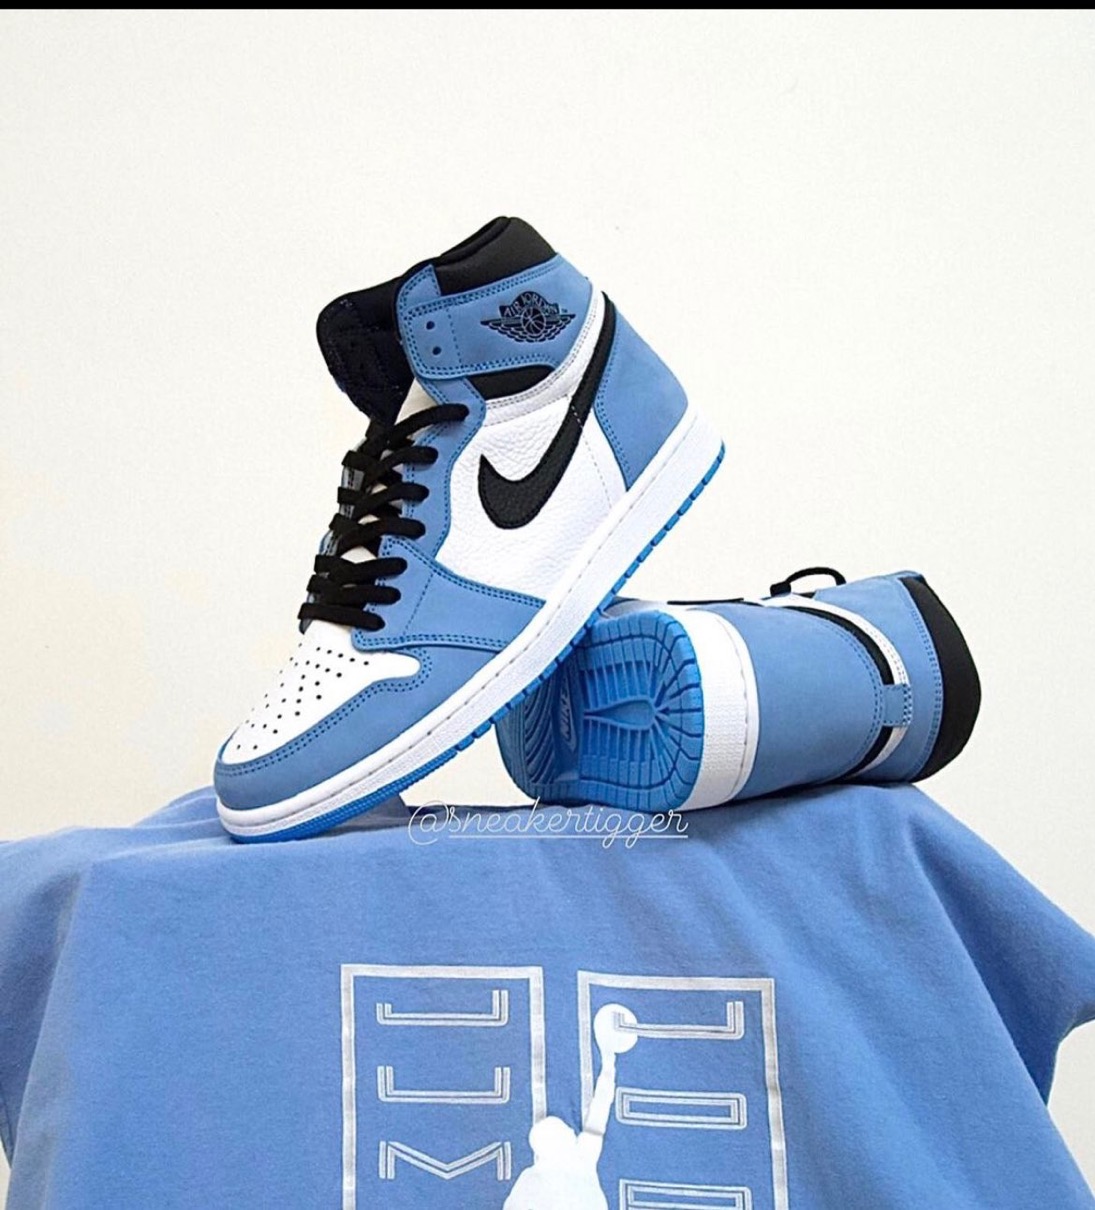 Nike】Air Jordan 1 Retro High OG “University Blue”が国内3月6日/3月 